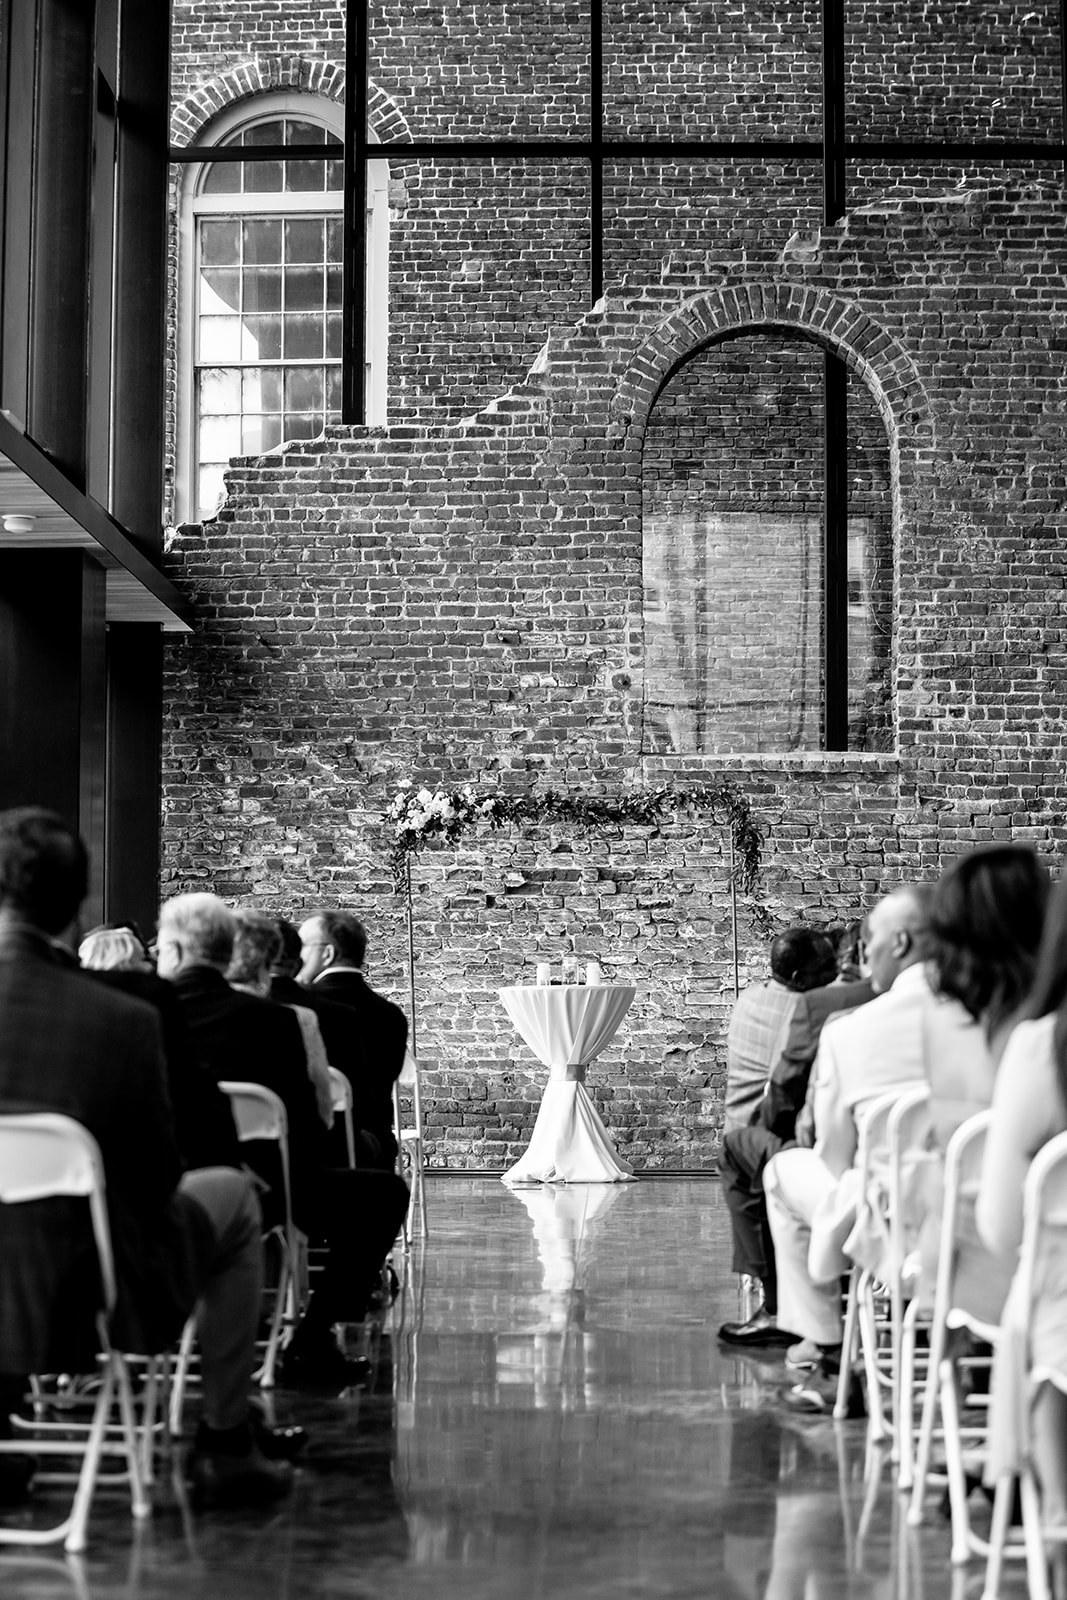 Ashley  Wesleys Wedding at Tredegar Iron Works - Image Property of www.j-dphoto.com